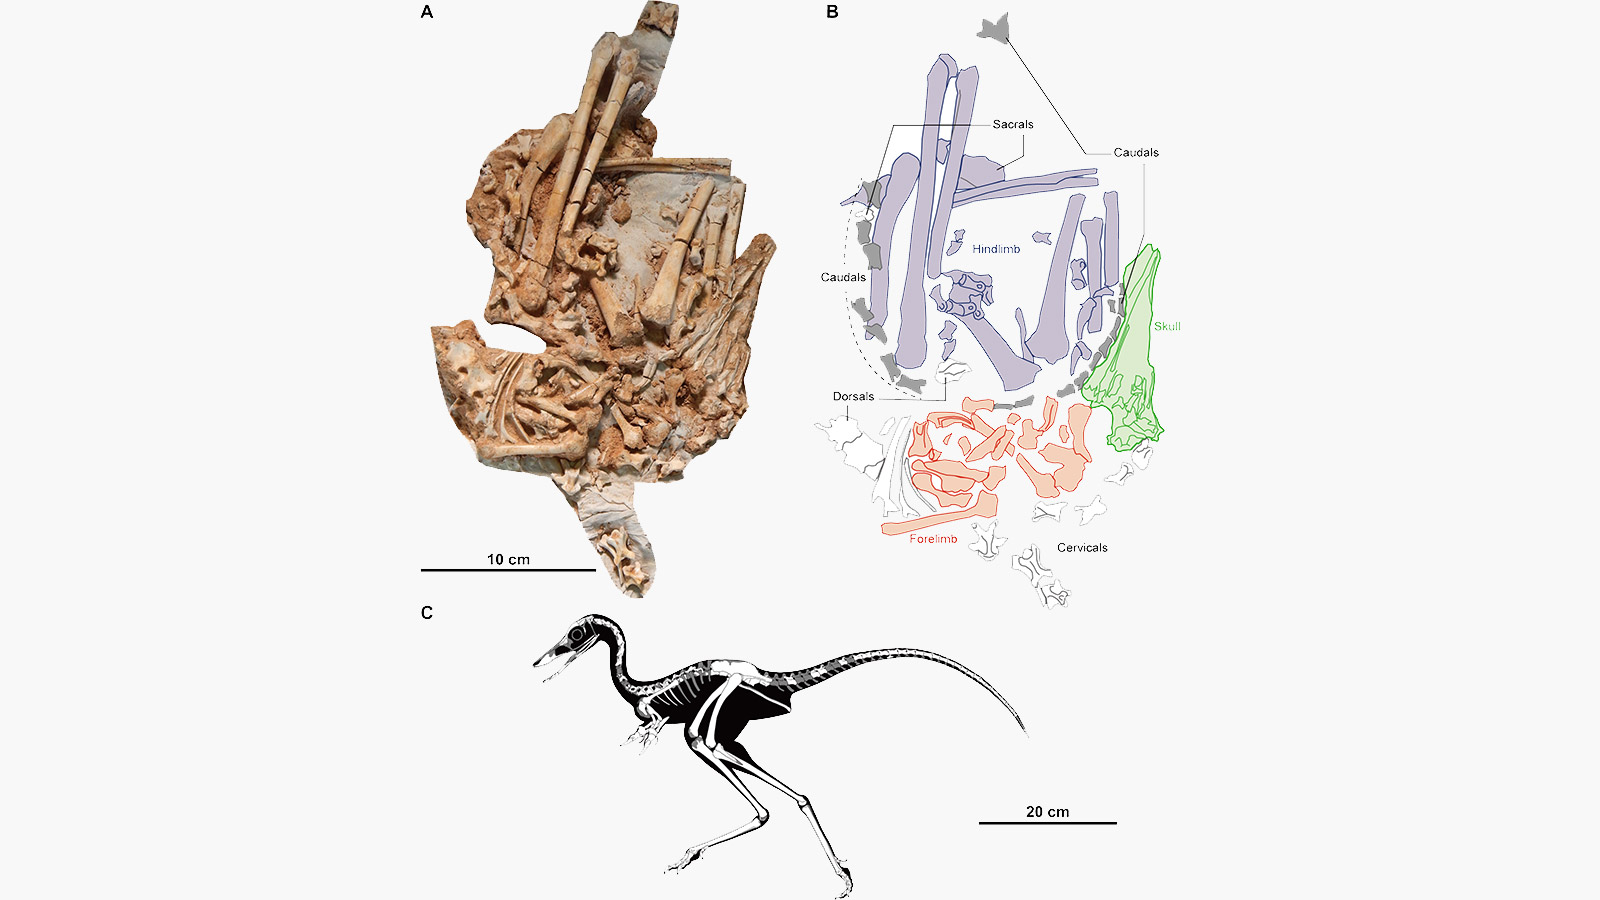 <p>На изображении:&nbsp;(А) фотография найденного образца,&nbsp;(B) пояснительная схема&nbsp;скелета, (C) реконструкция предположительного внешнего вида динозавра&nbsp;Jaculinykus yaruui<br />
<br />
&nbsp;</p>